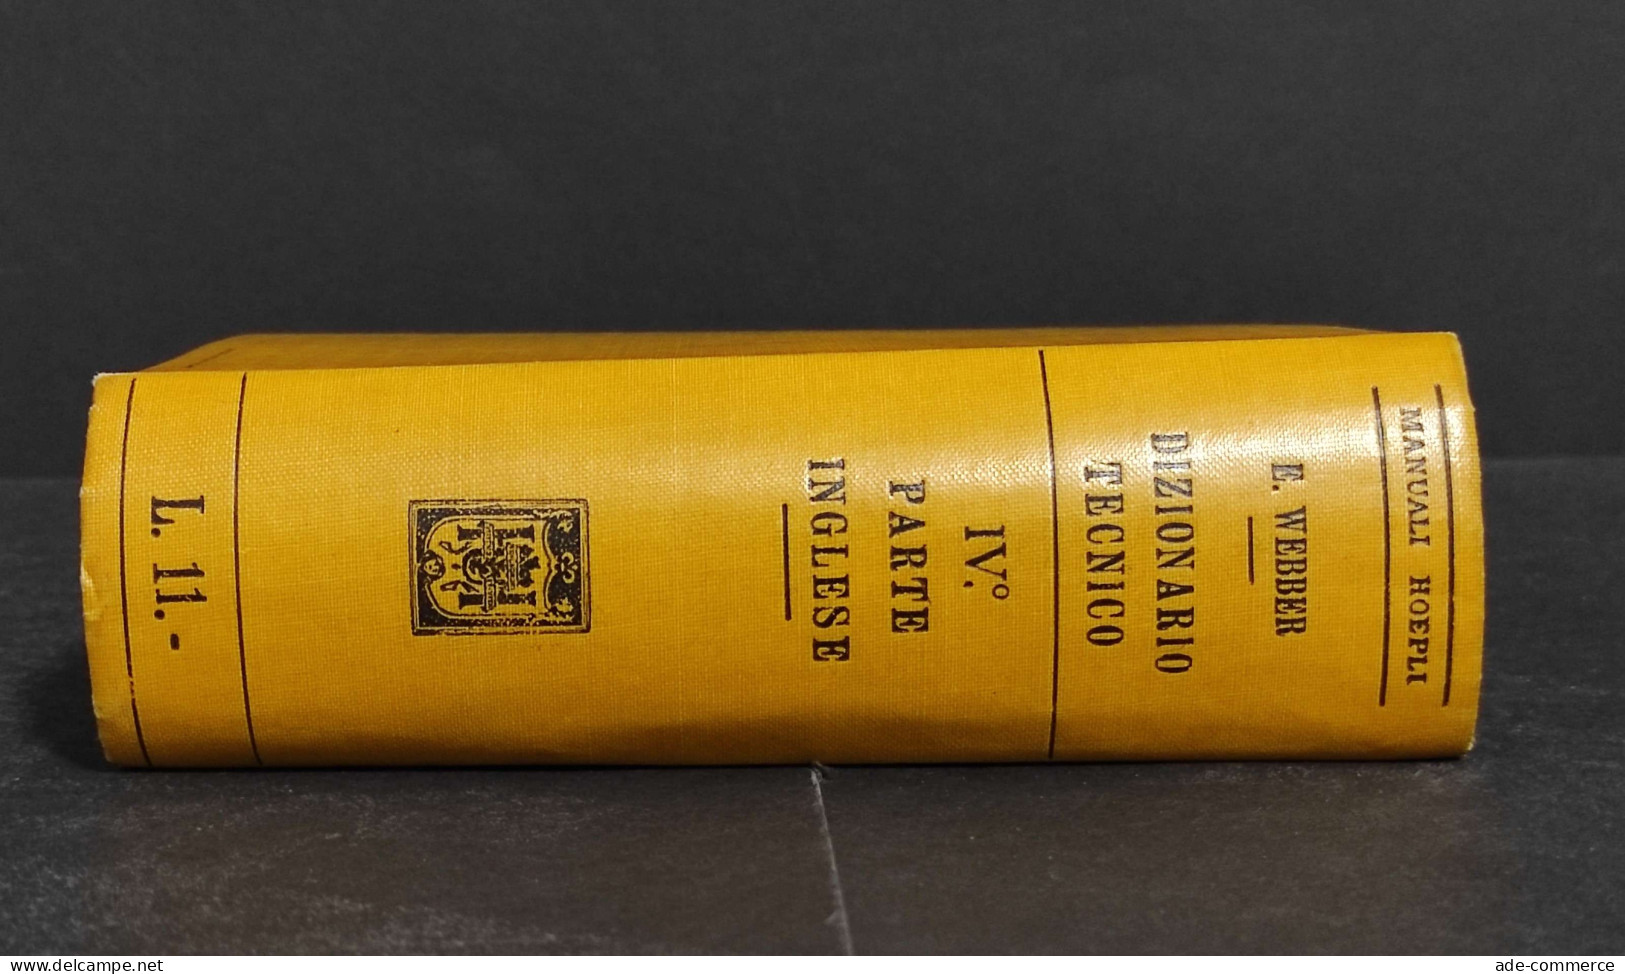 Dizionario Tecnico In Quattro Lingue IV - E. Webber - Ed. Hoepli - 1917 - Collectors Manuals